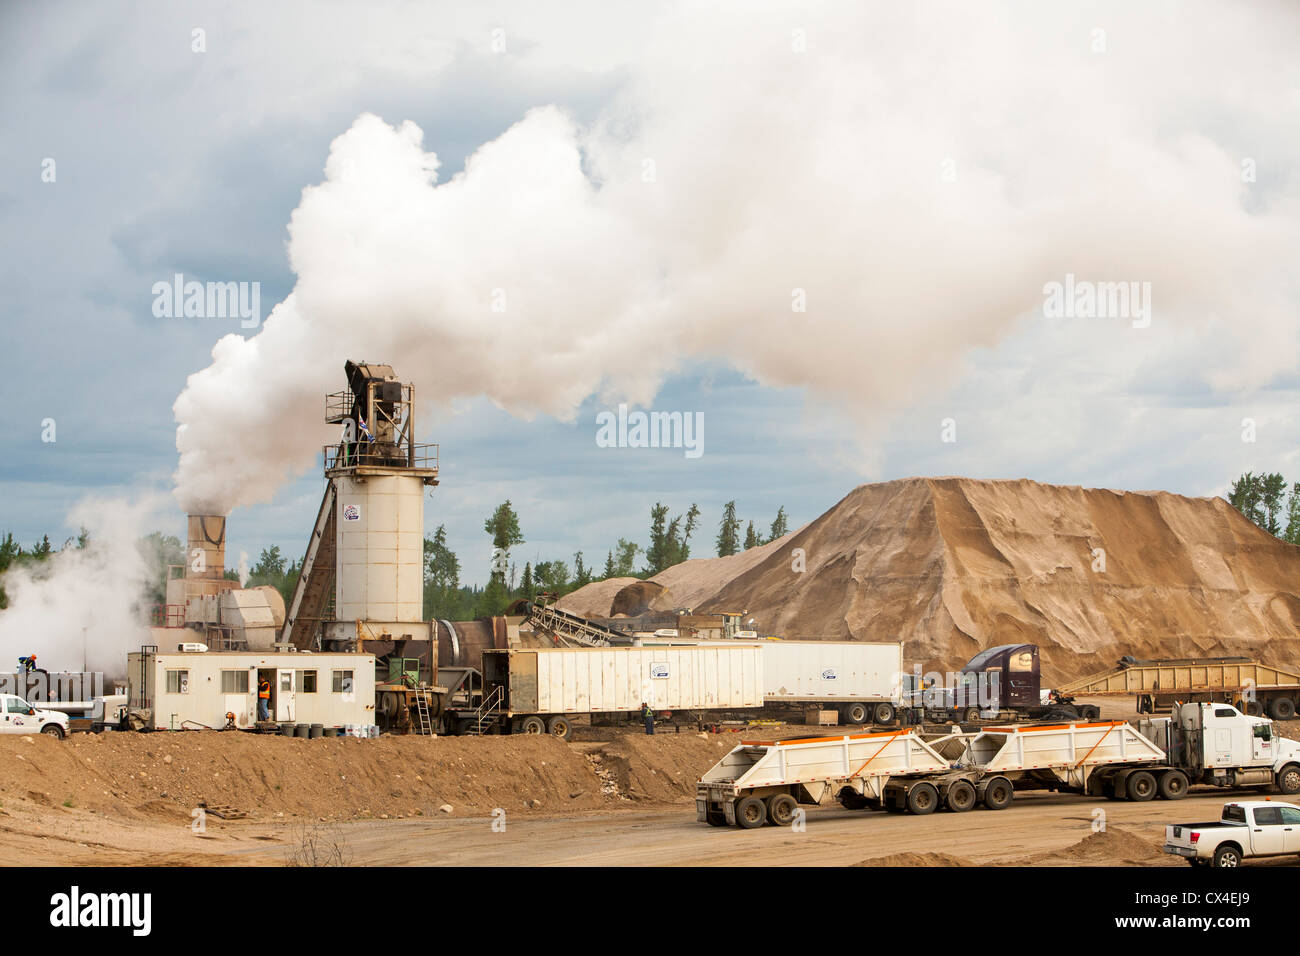 Une bande de sable et de gravier mine produisant du matériel didactique pour l'industrie des sables bitumineux sur la route 63, l'Alberta, Canada. Banque D'Images